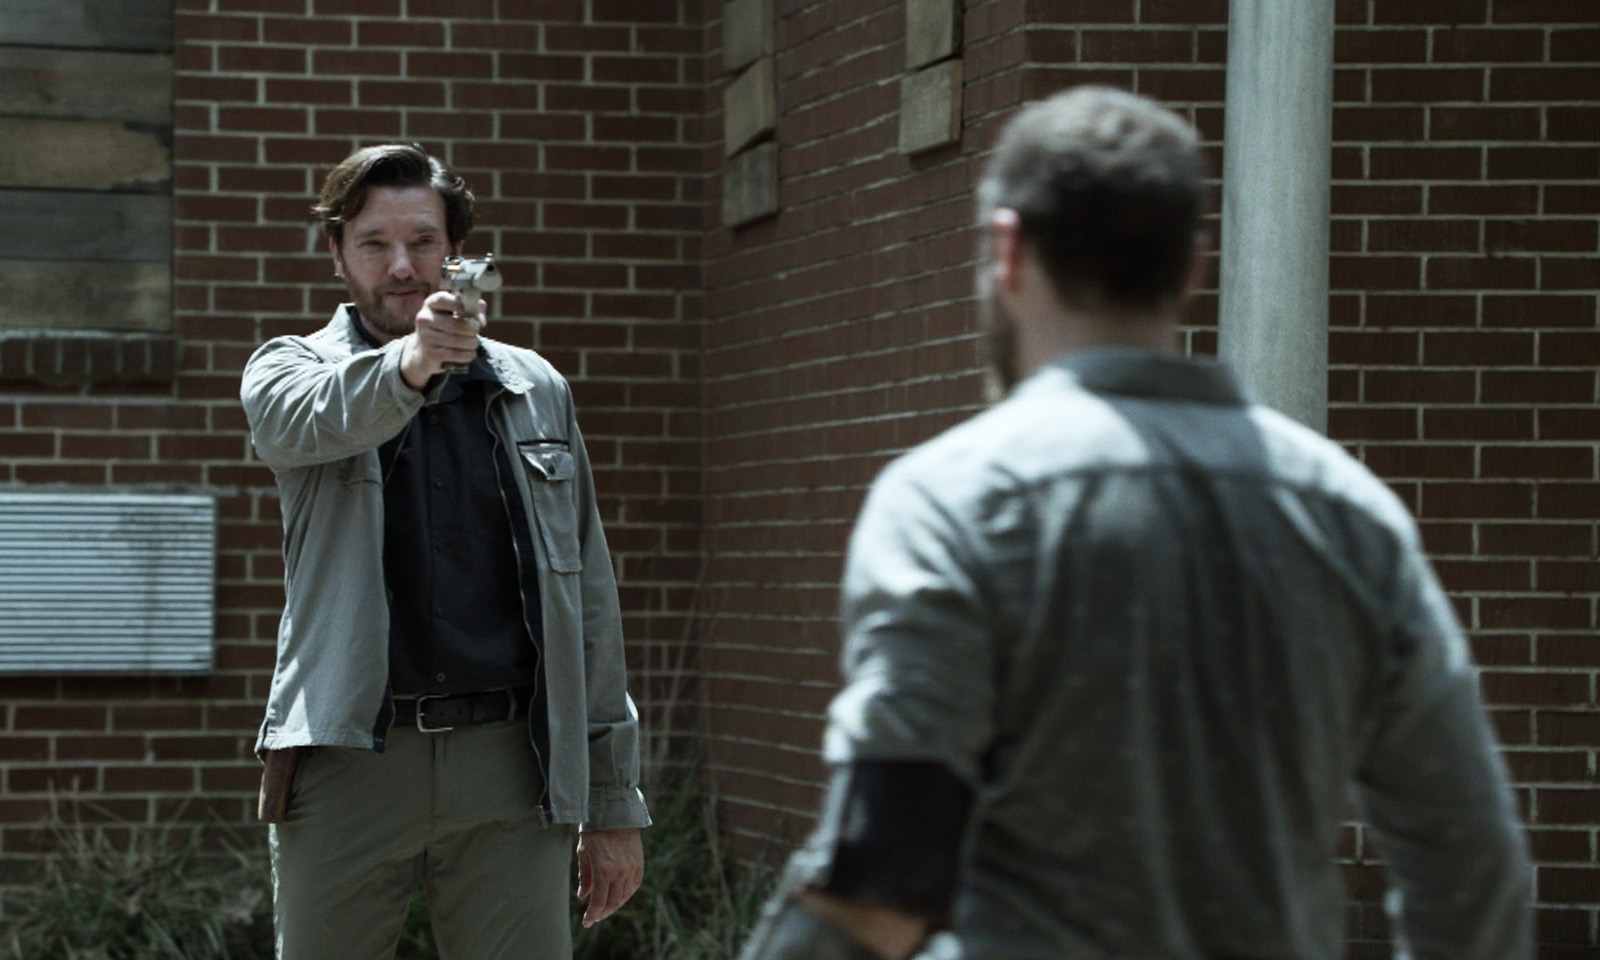 Toby apontando uma arma para Aaron em cena do episódio 13 da 11ª temporada de The Walking Dead.